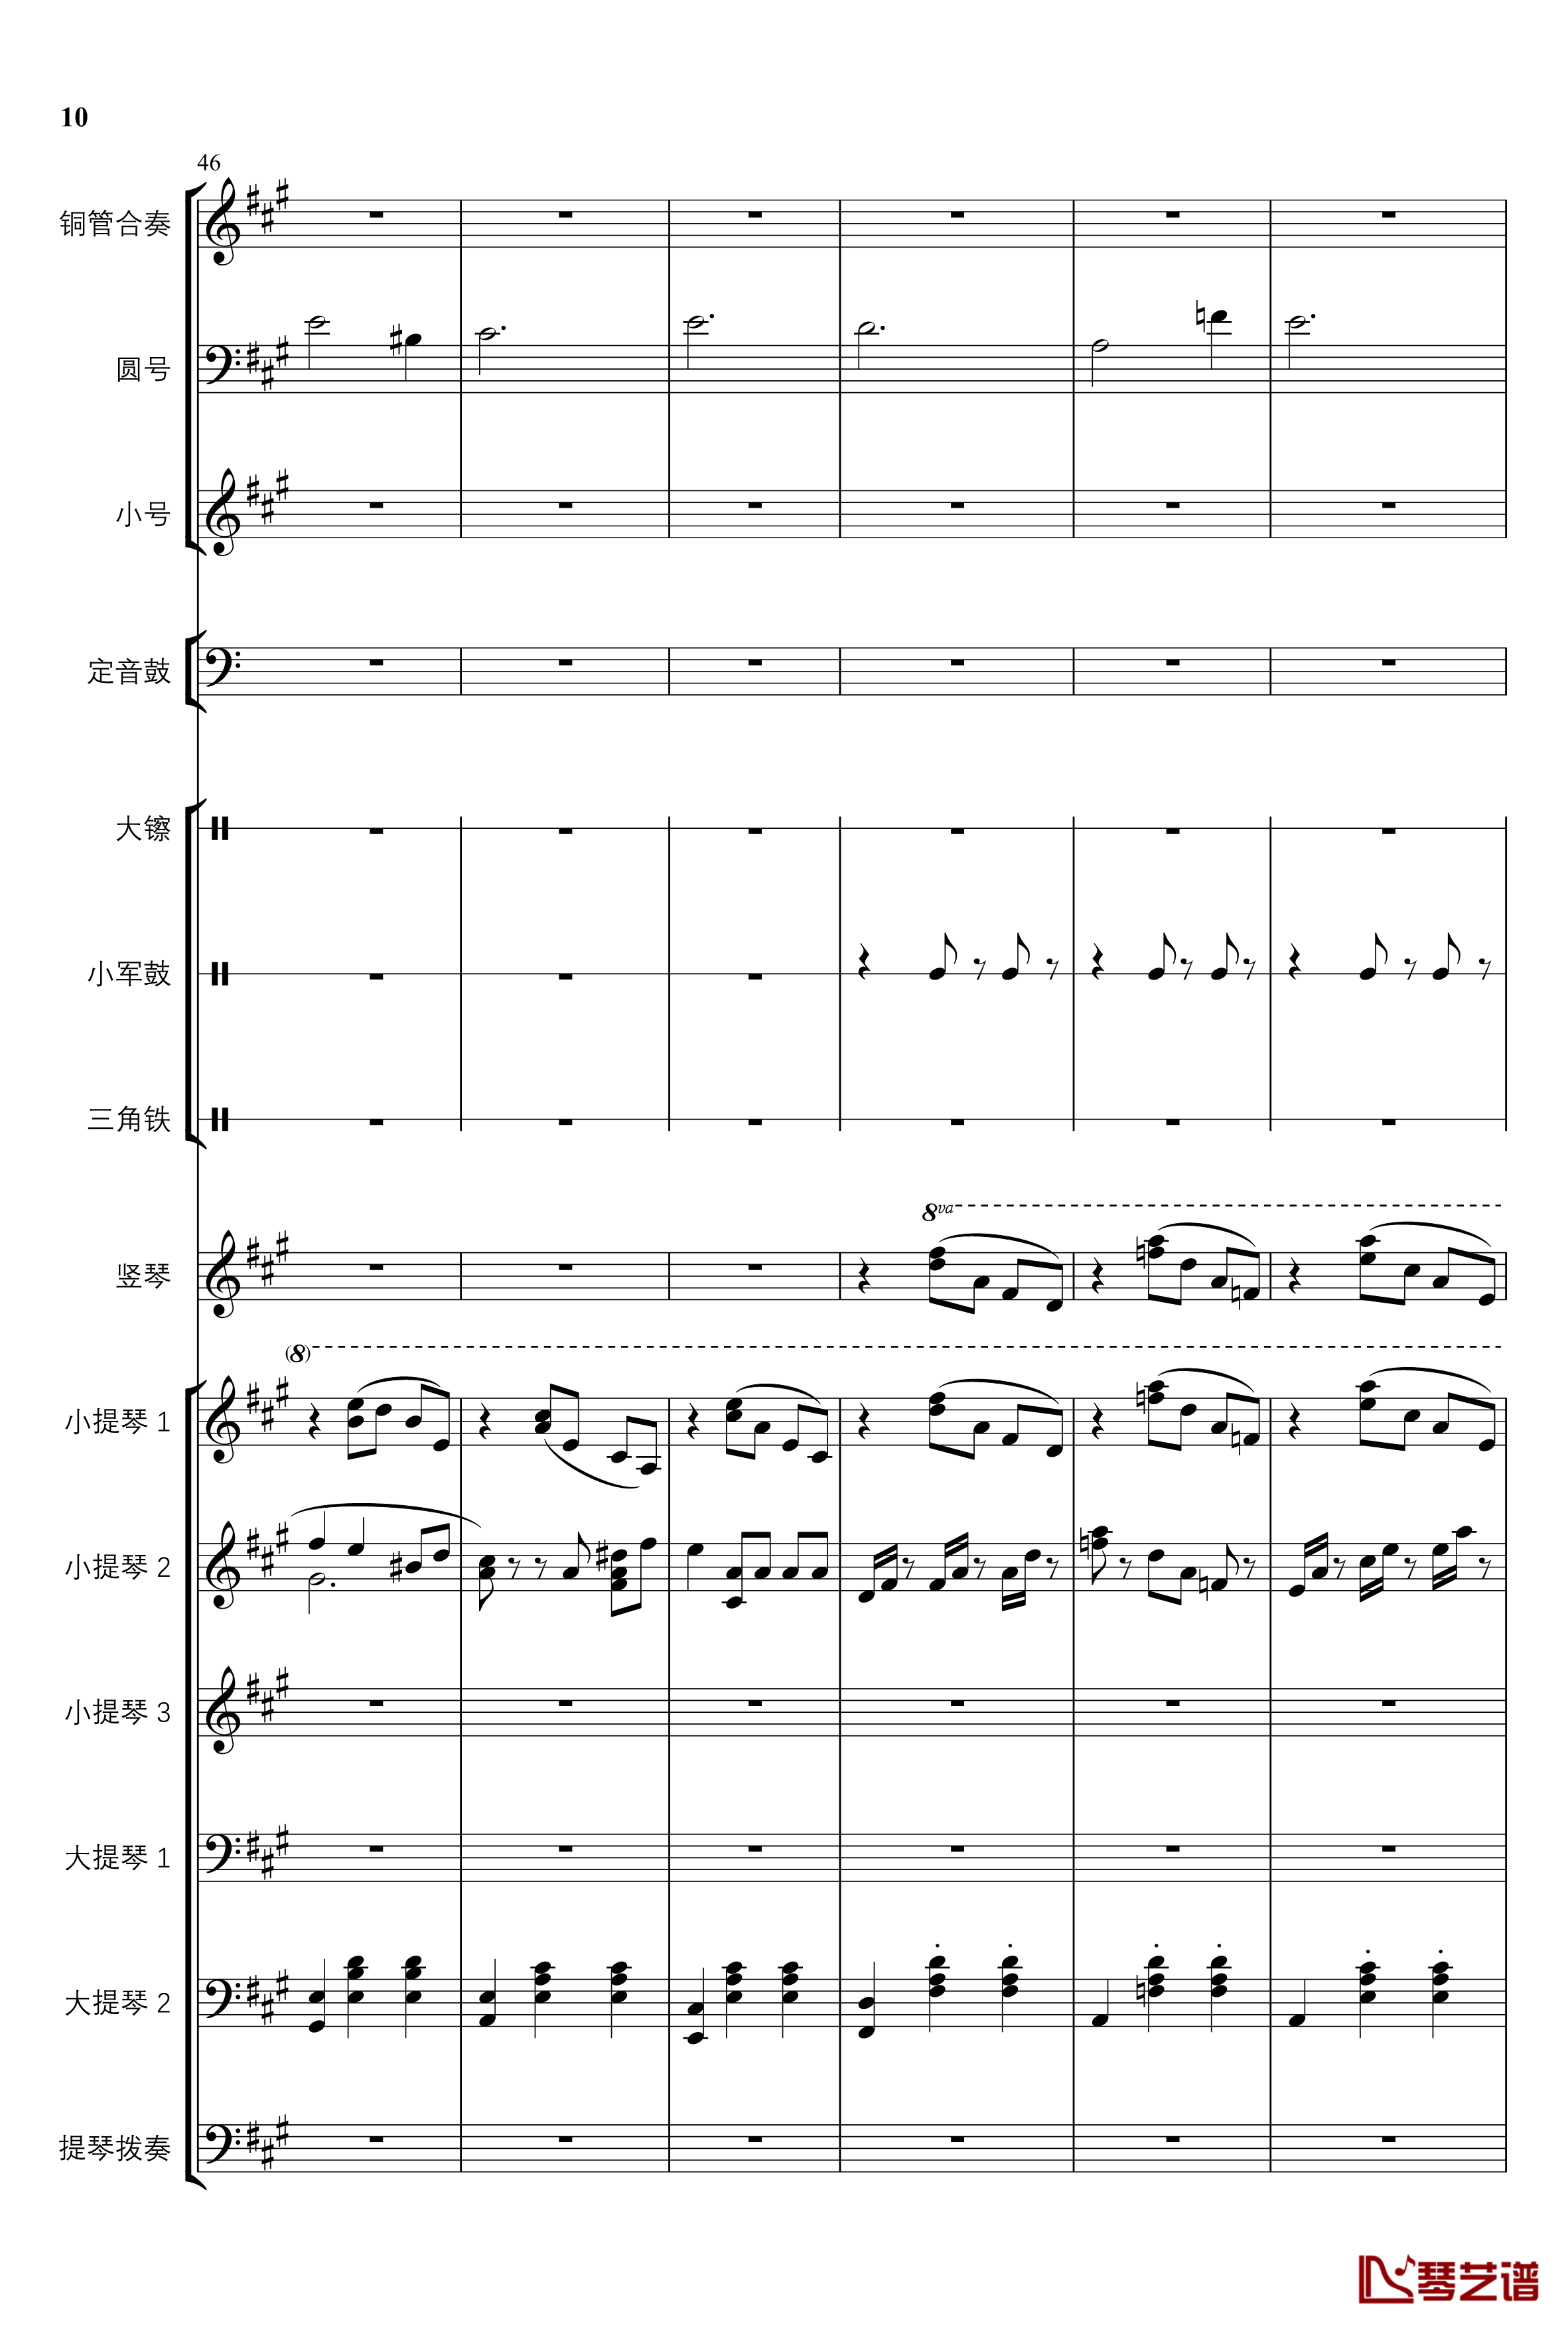 2013考试周的叙事曲钢琴谱-管弦乐重编曲版-江畔新绿10